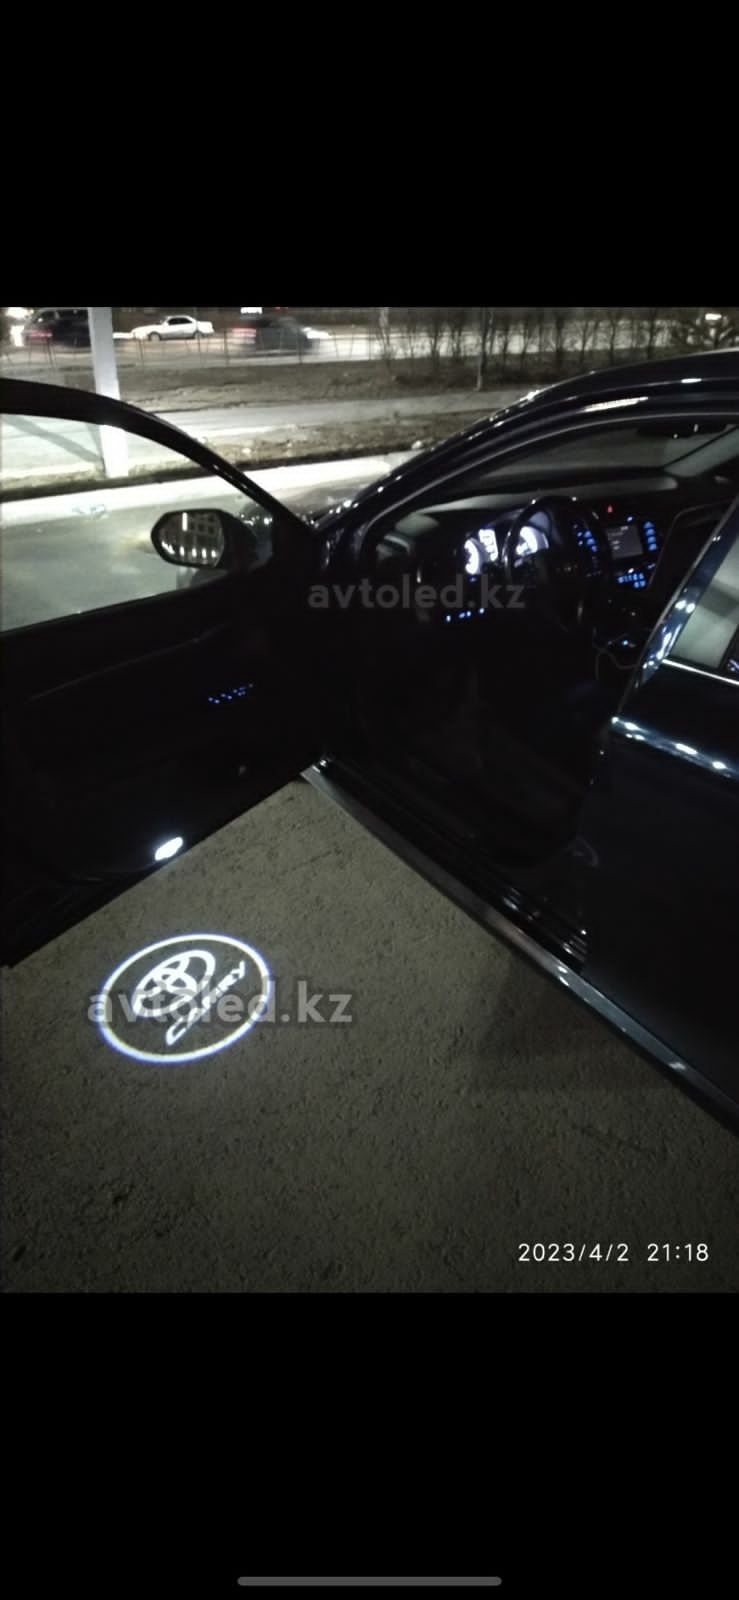 Проекция логотипа на авто в дверь.  Toyota Camry, land cruiser, Prado